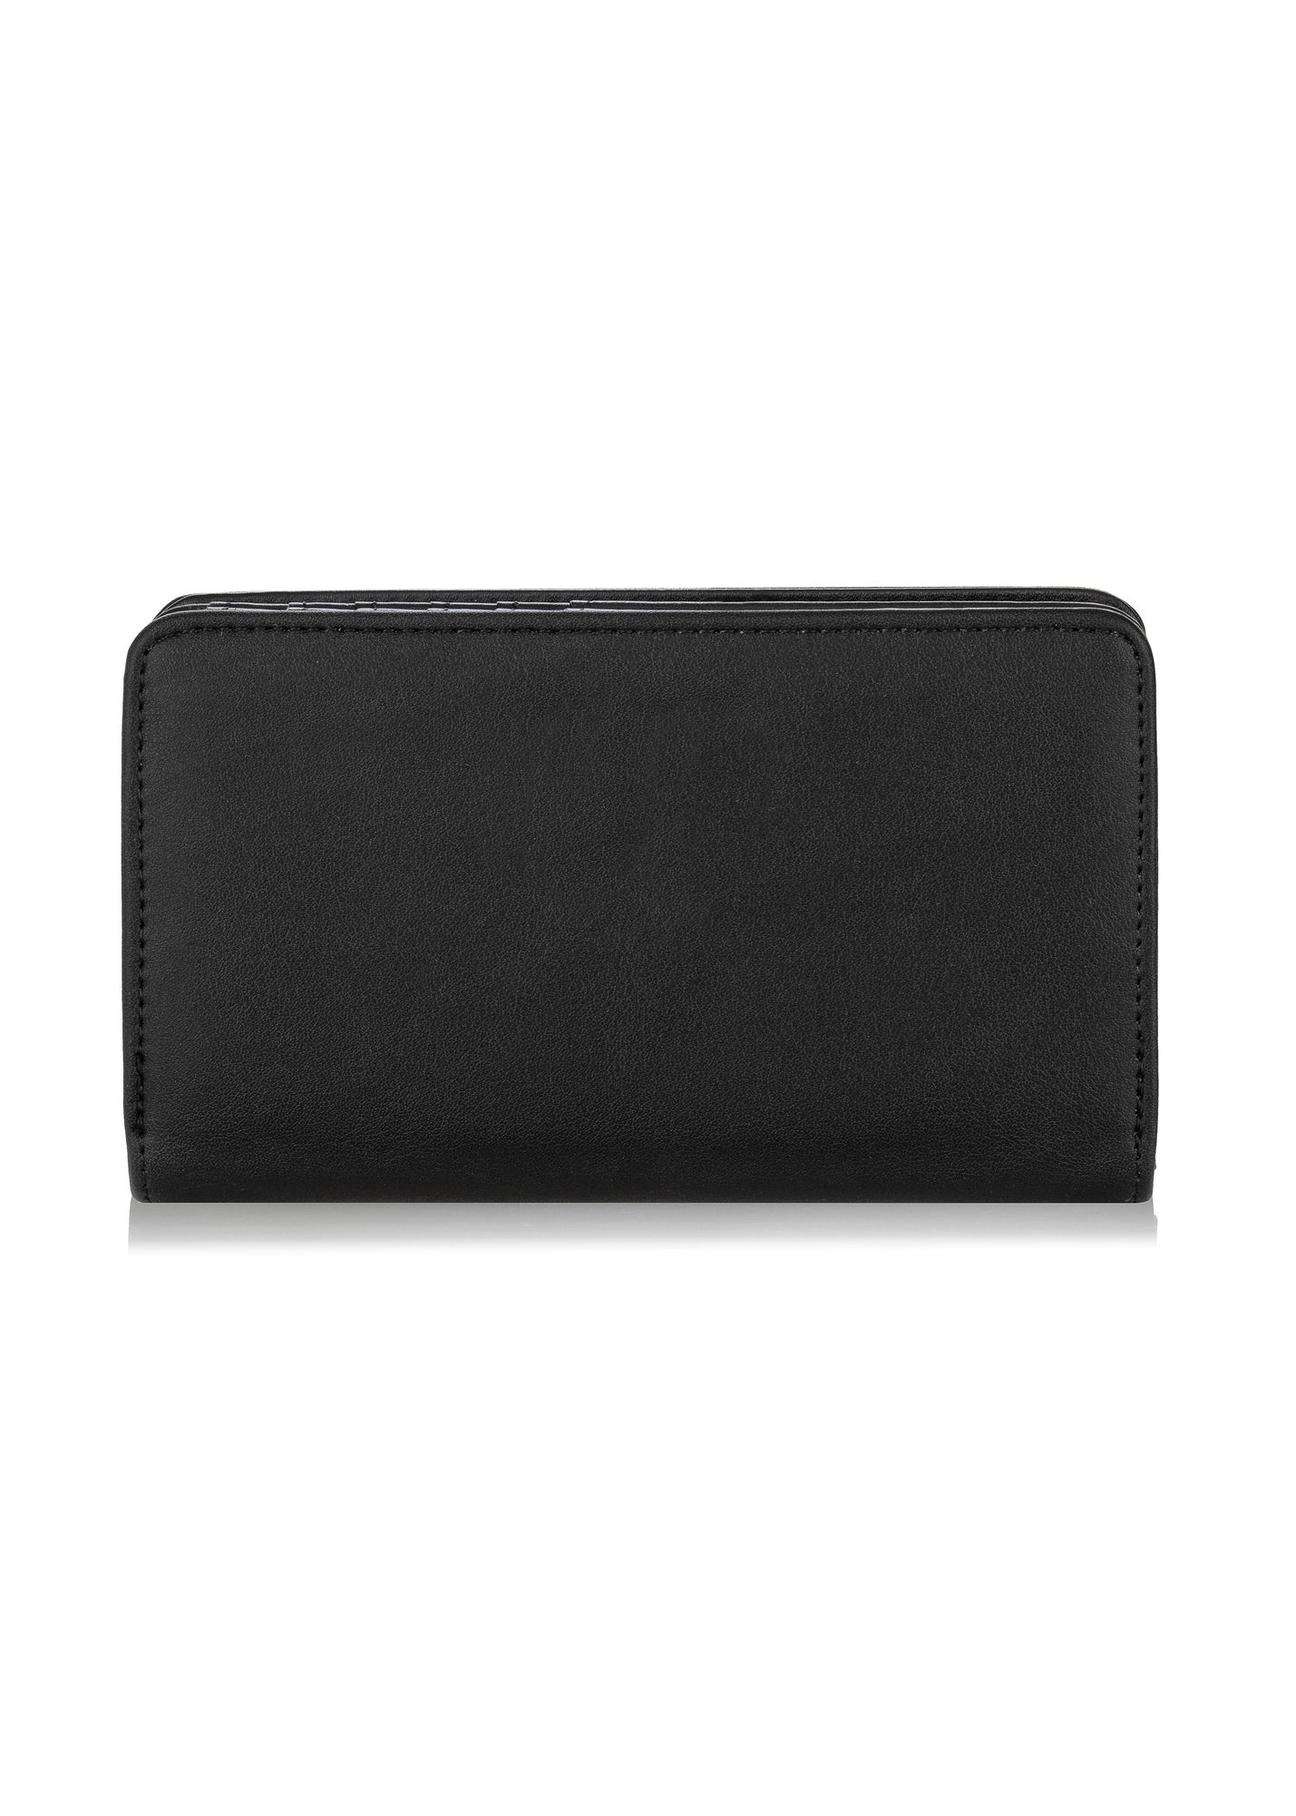 Czarny portfel damski z logo POREC-0364-99(W24)